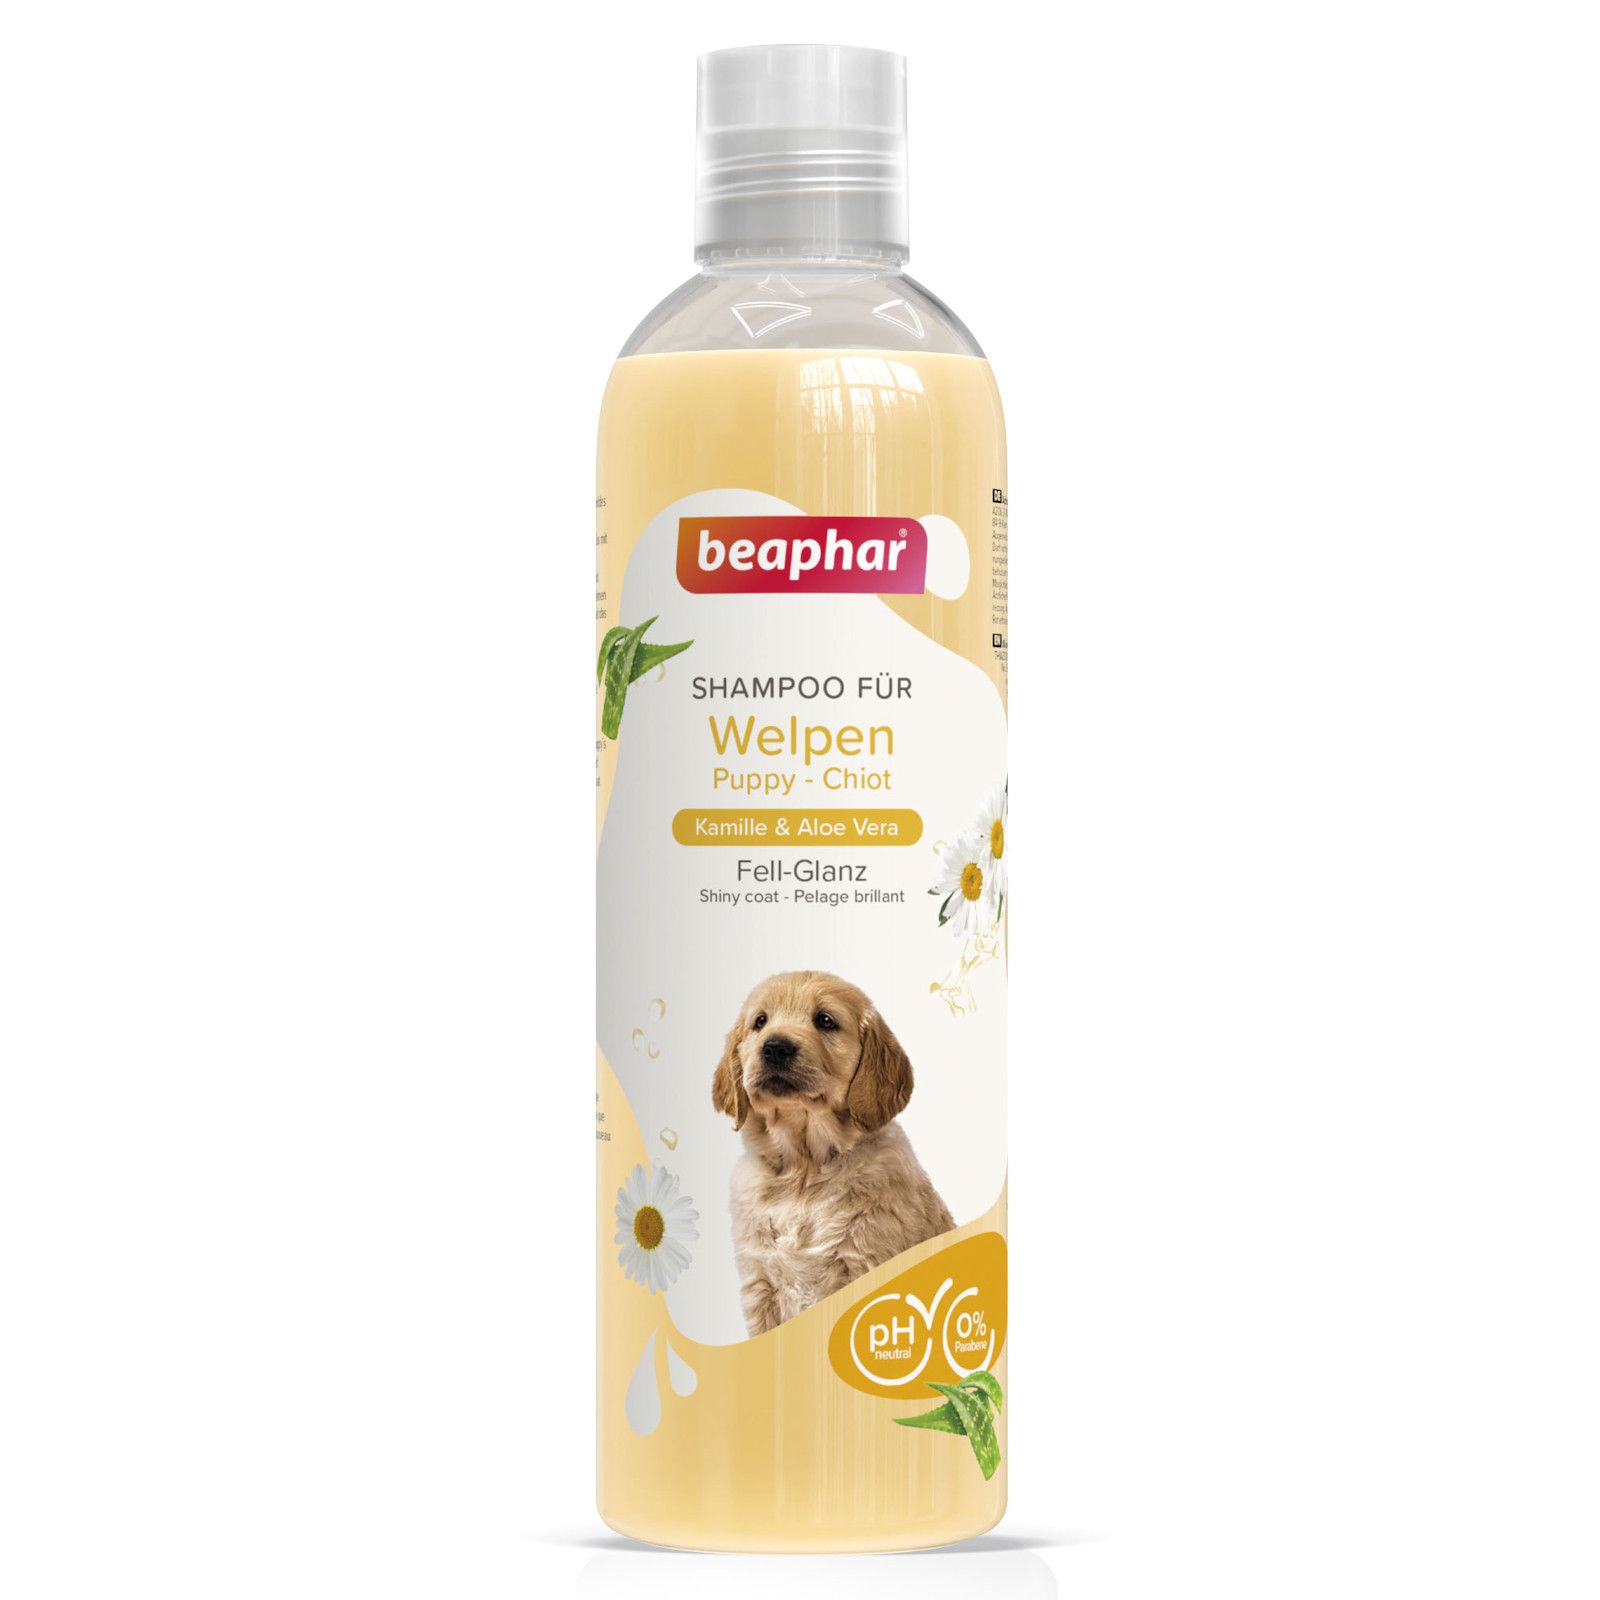 Beaphar - Shampoo für Welpen